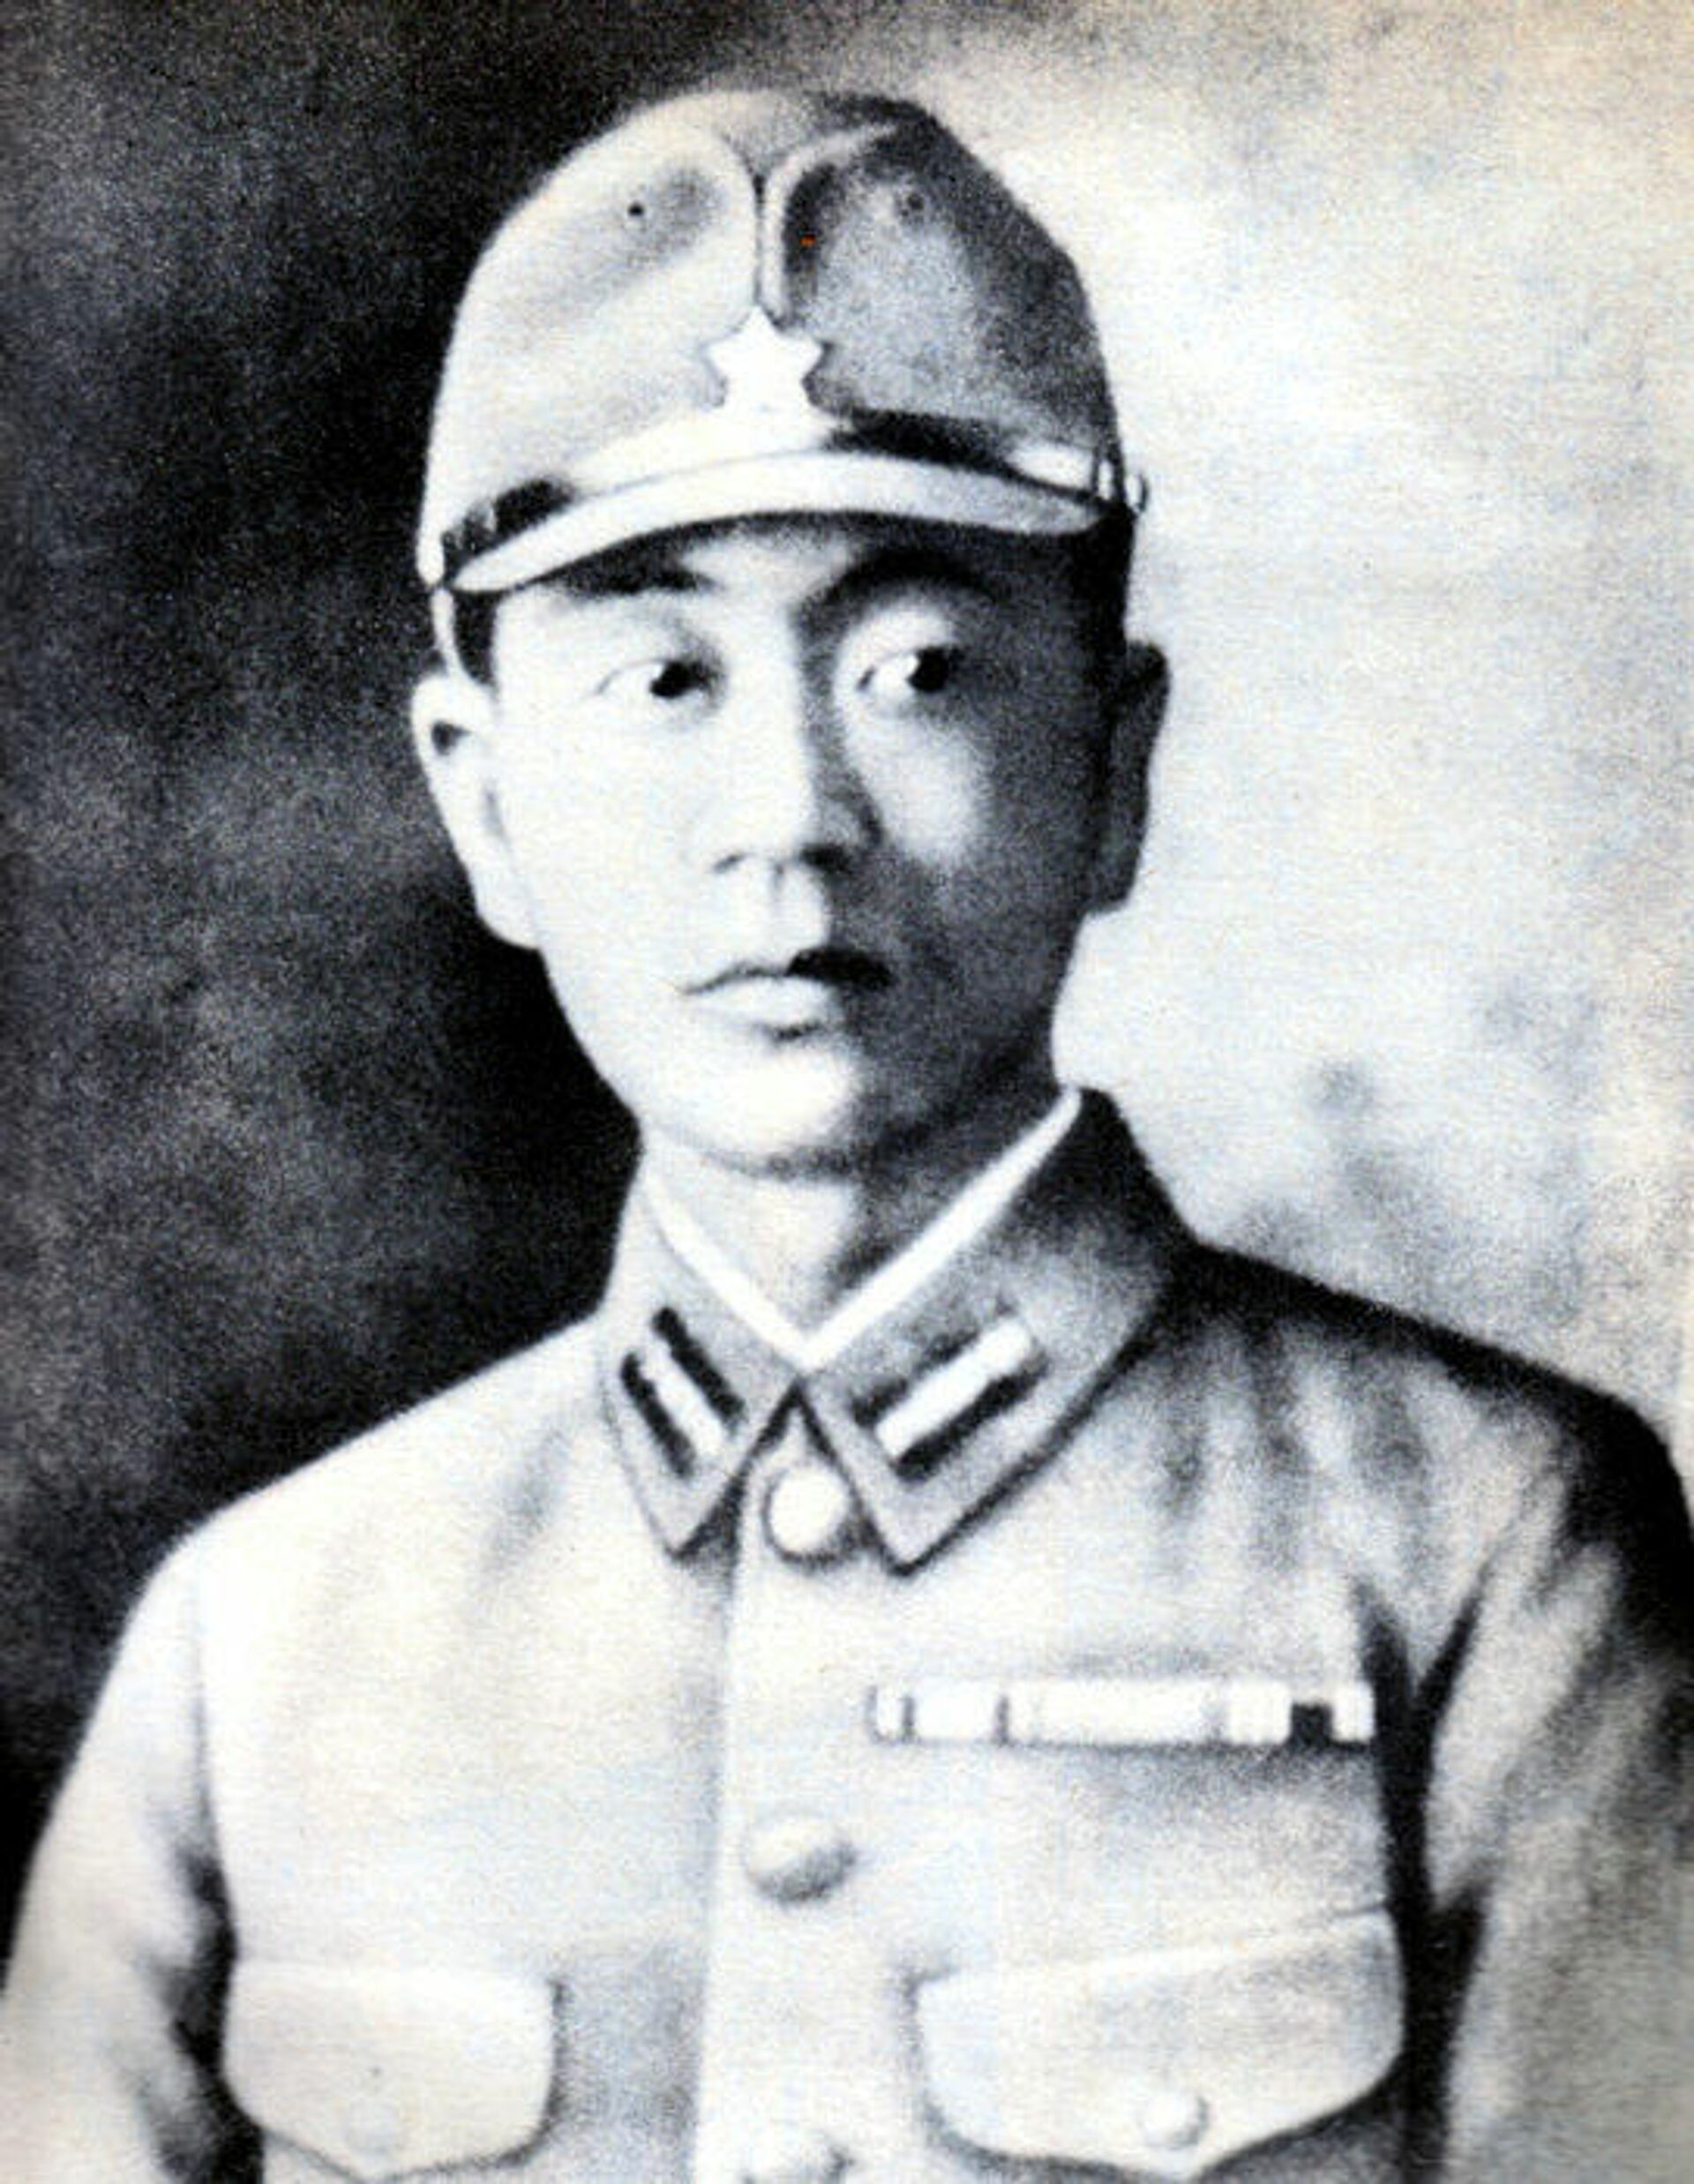 Šoiči Jokoi, japanski vojnik koji je zarobljen 28 godina posle kraja Drugog svetskog rata - Sputnik Srbija, 1920, 25.01.2022